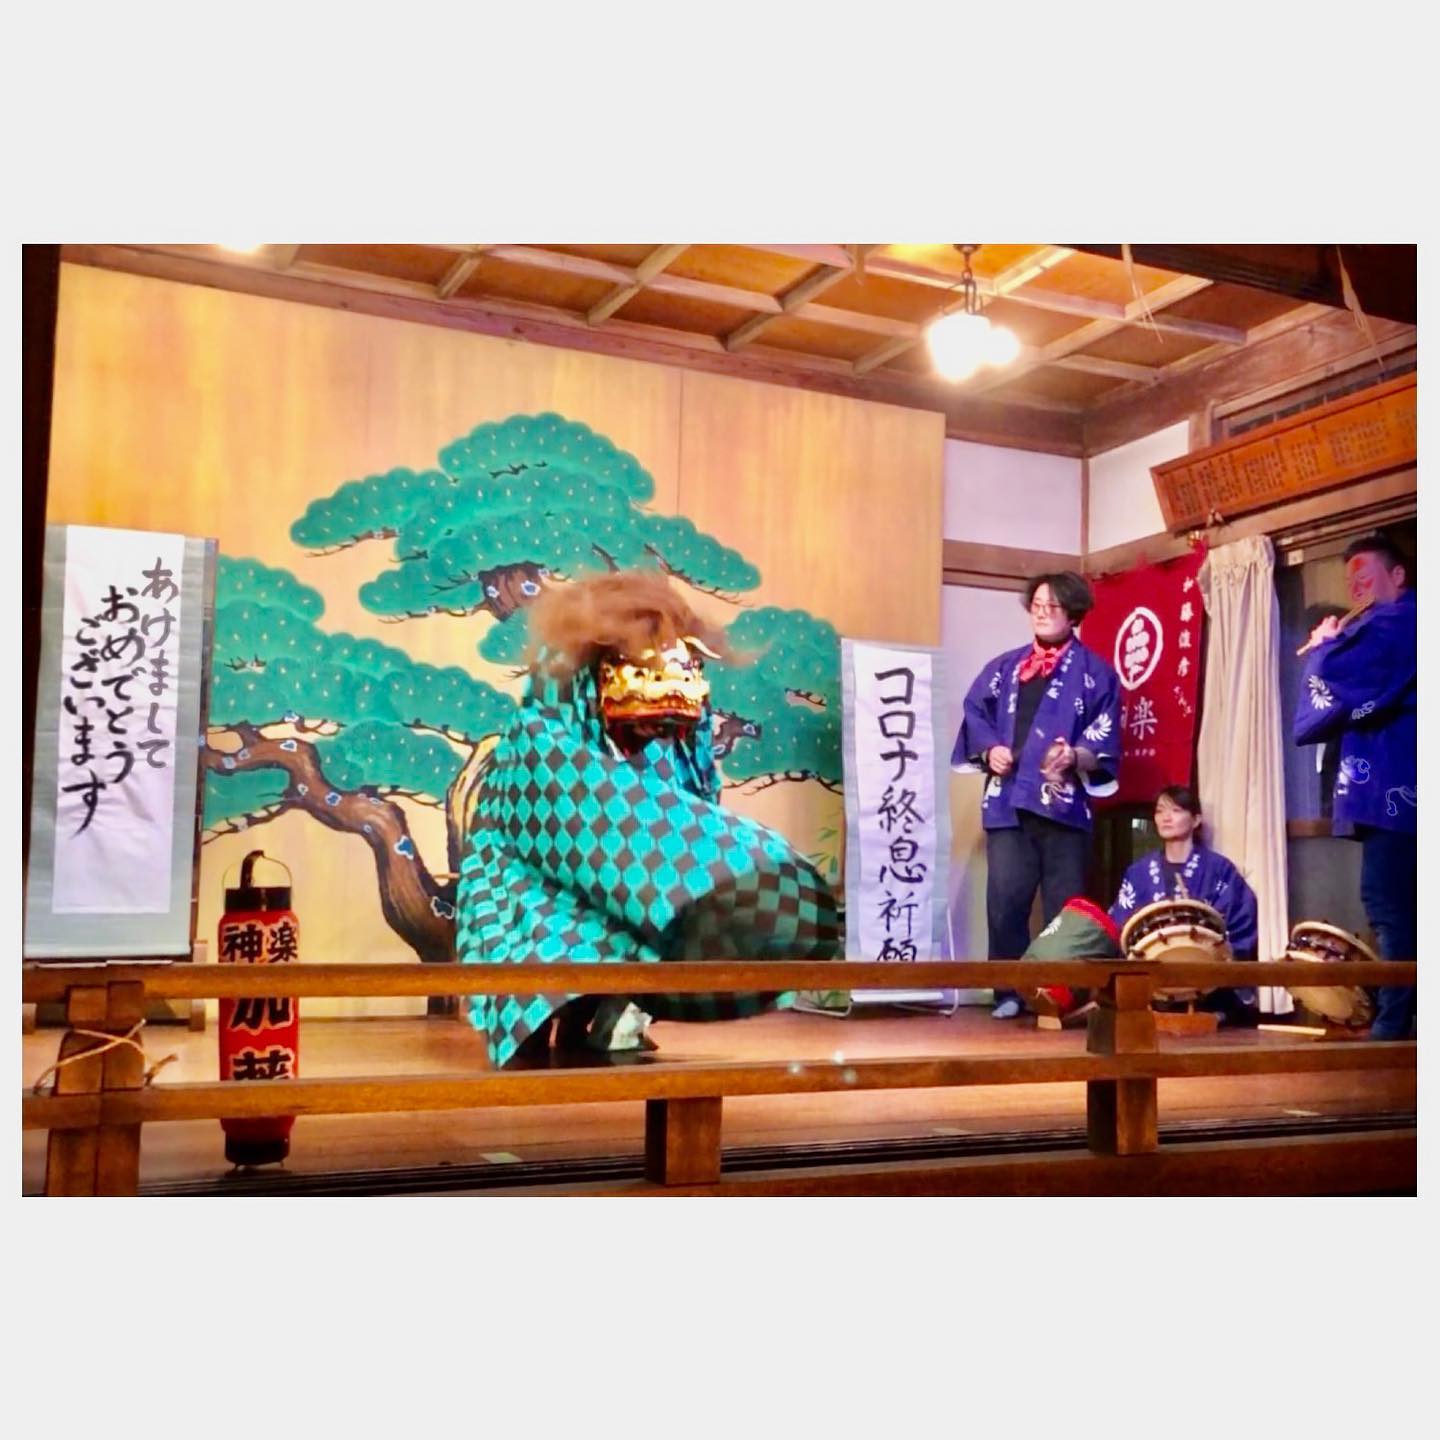 .明けましておめでとうございます大晦日は、東神奈川熊野神社にて。獅子舞に巷で話題の柄を取り入れてみましたら意外に馴染んでおりました。笑みんなの笑顔溢れる一年になりますように。本年もどうぞよろしくお願い申し上げます。#大晦日 #年越し #囃子 #獅子舞 #おかめ#鬼滅の刃 #竈門炭治郎 #竈門禰󠄀豆子